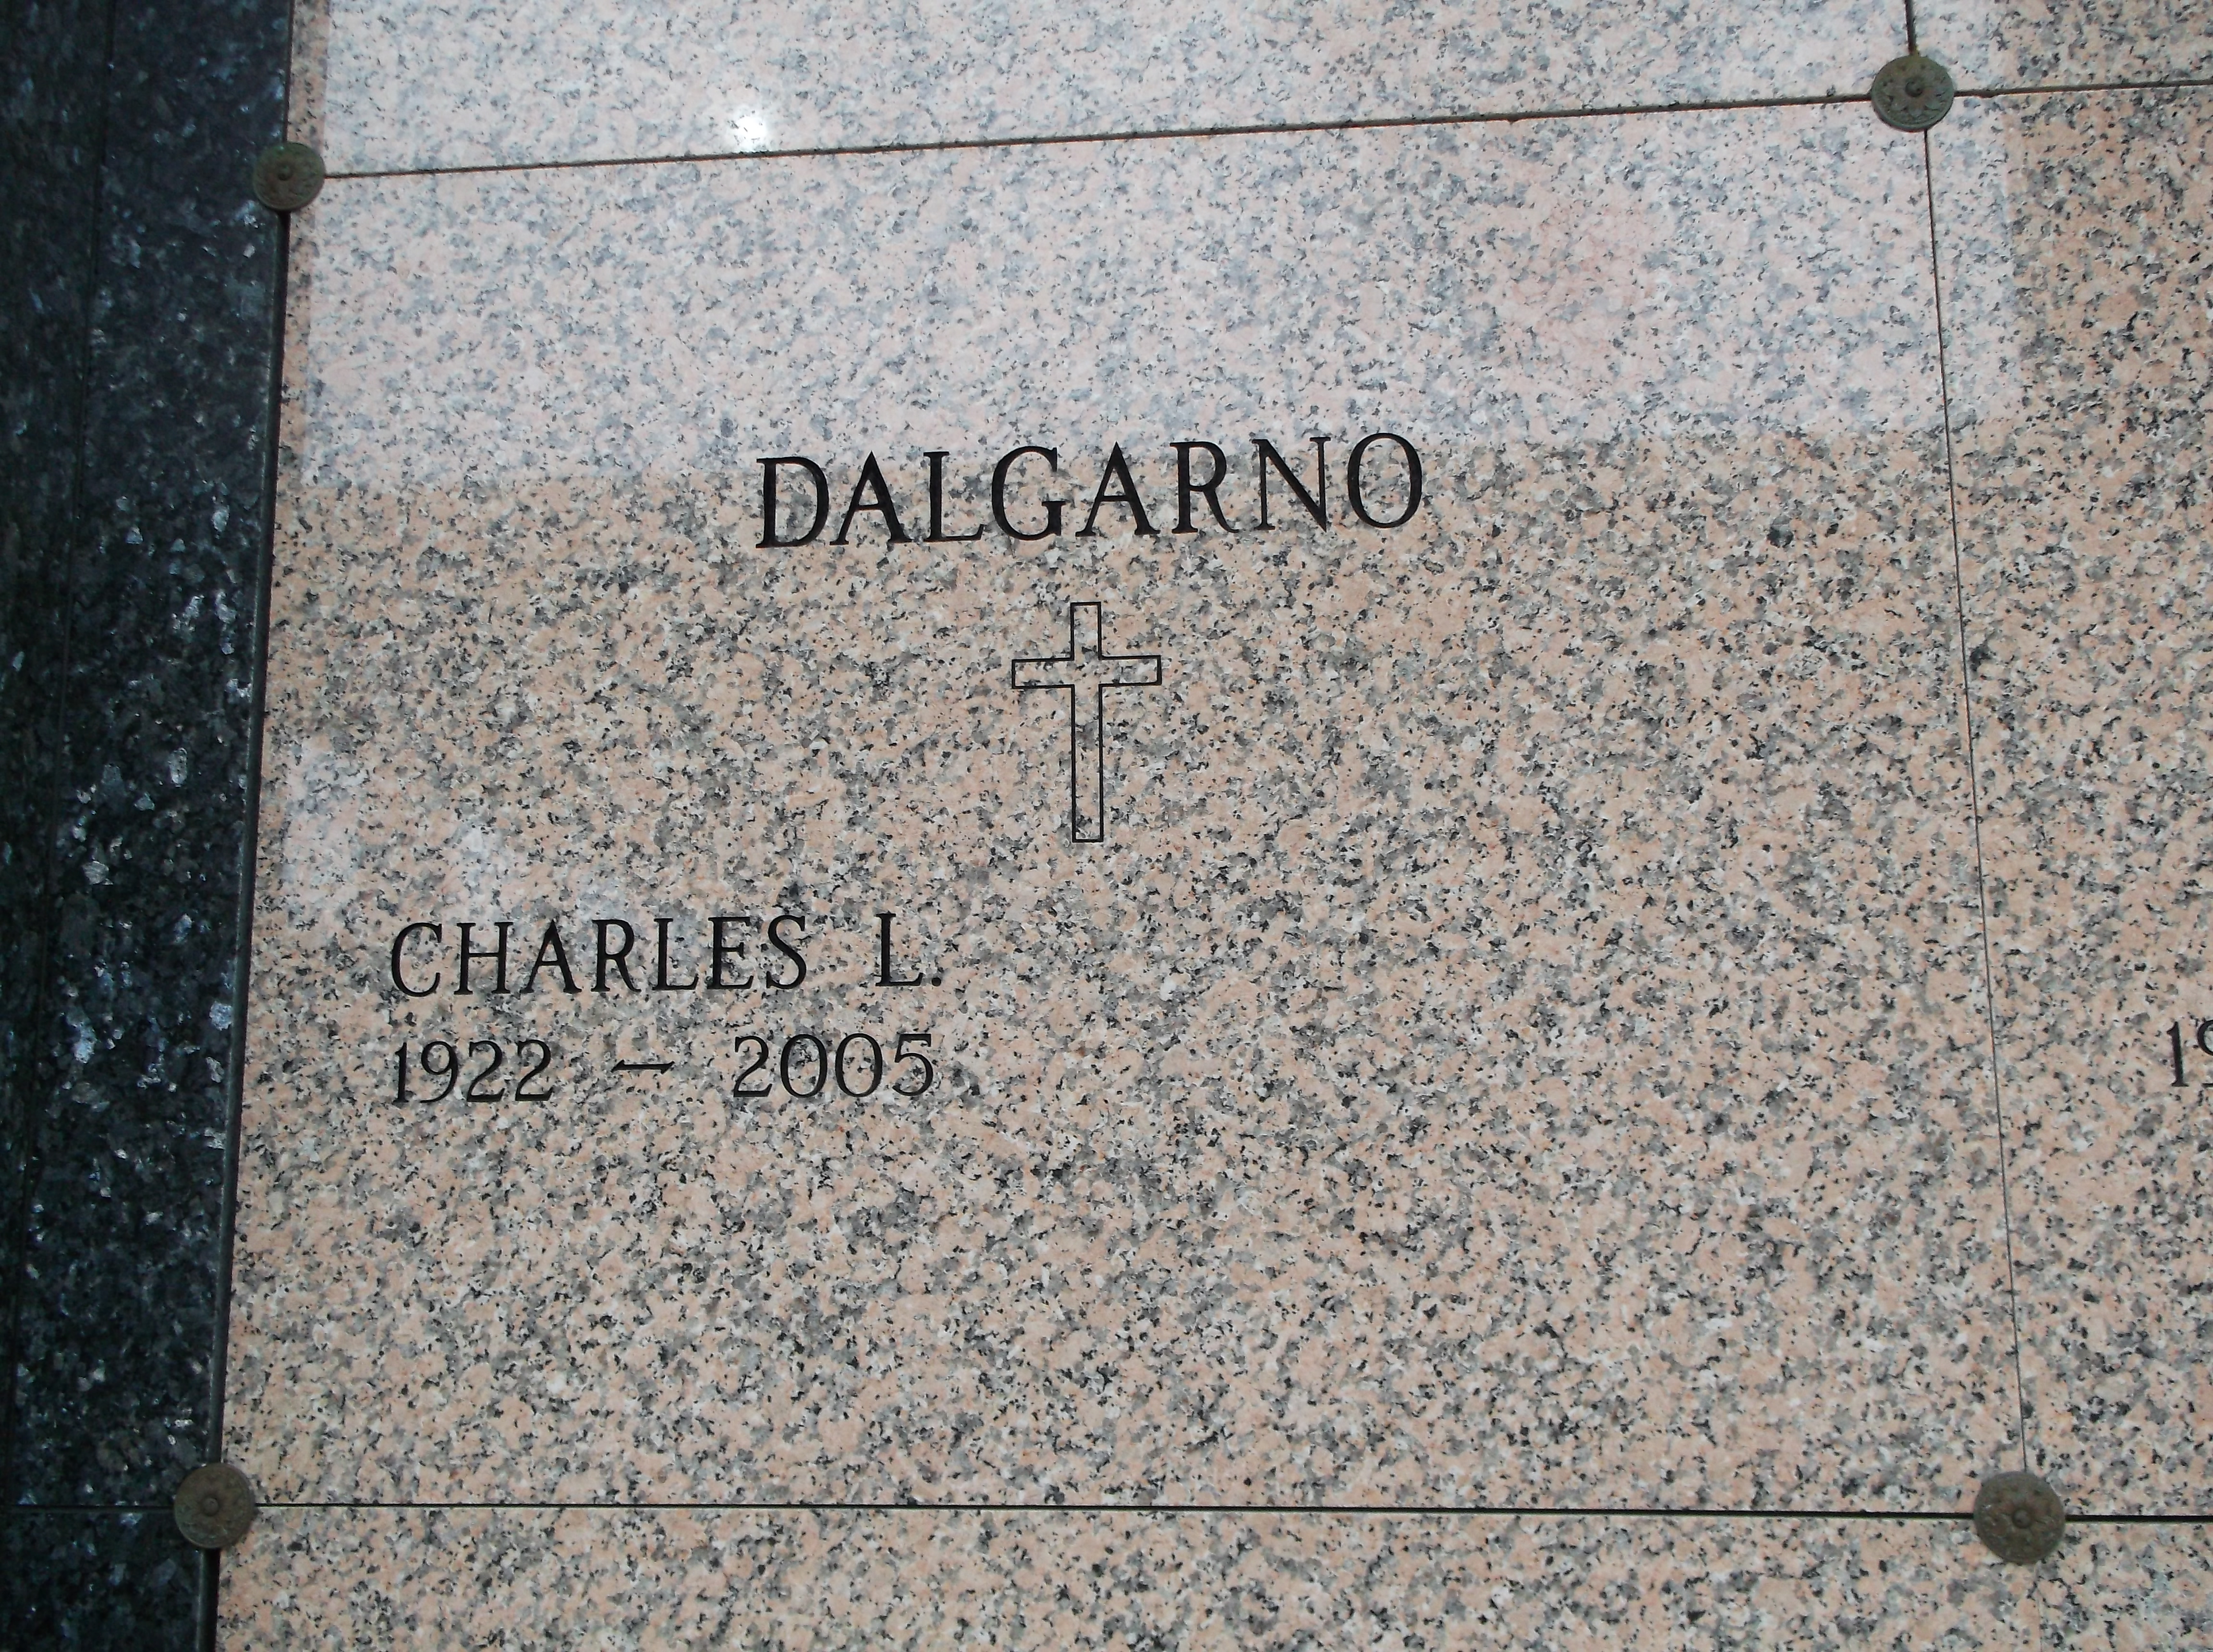 Charles L Dalgarno